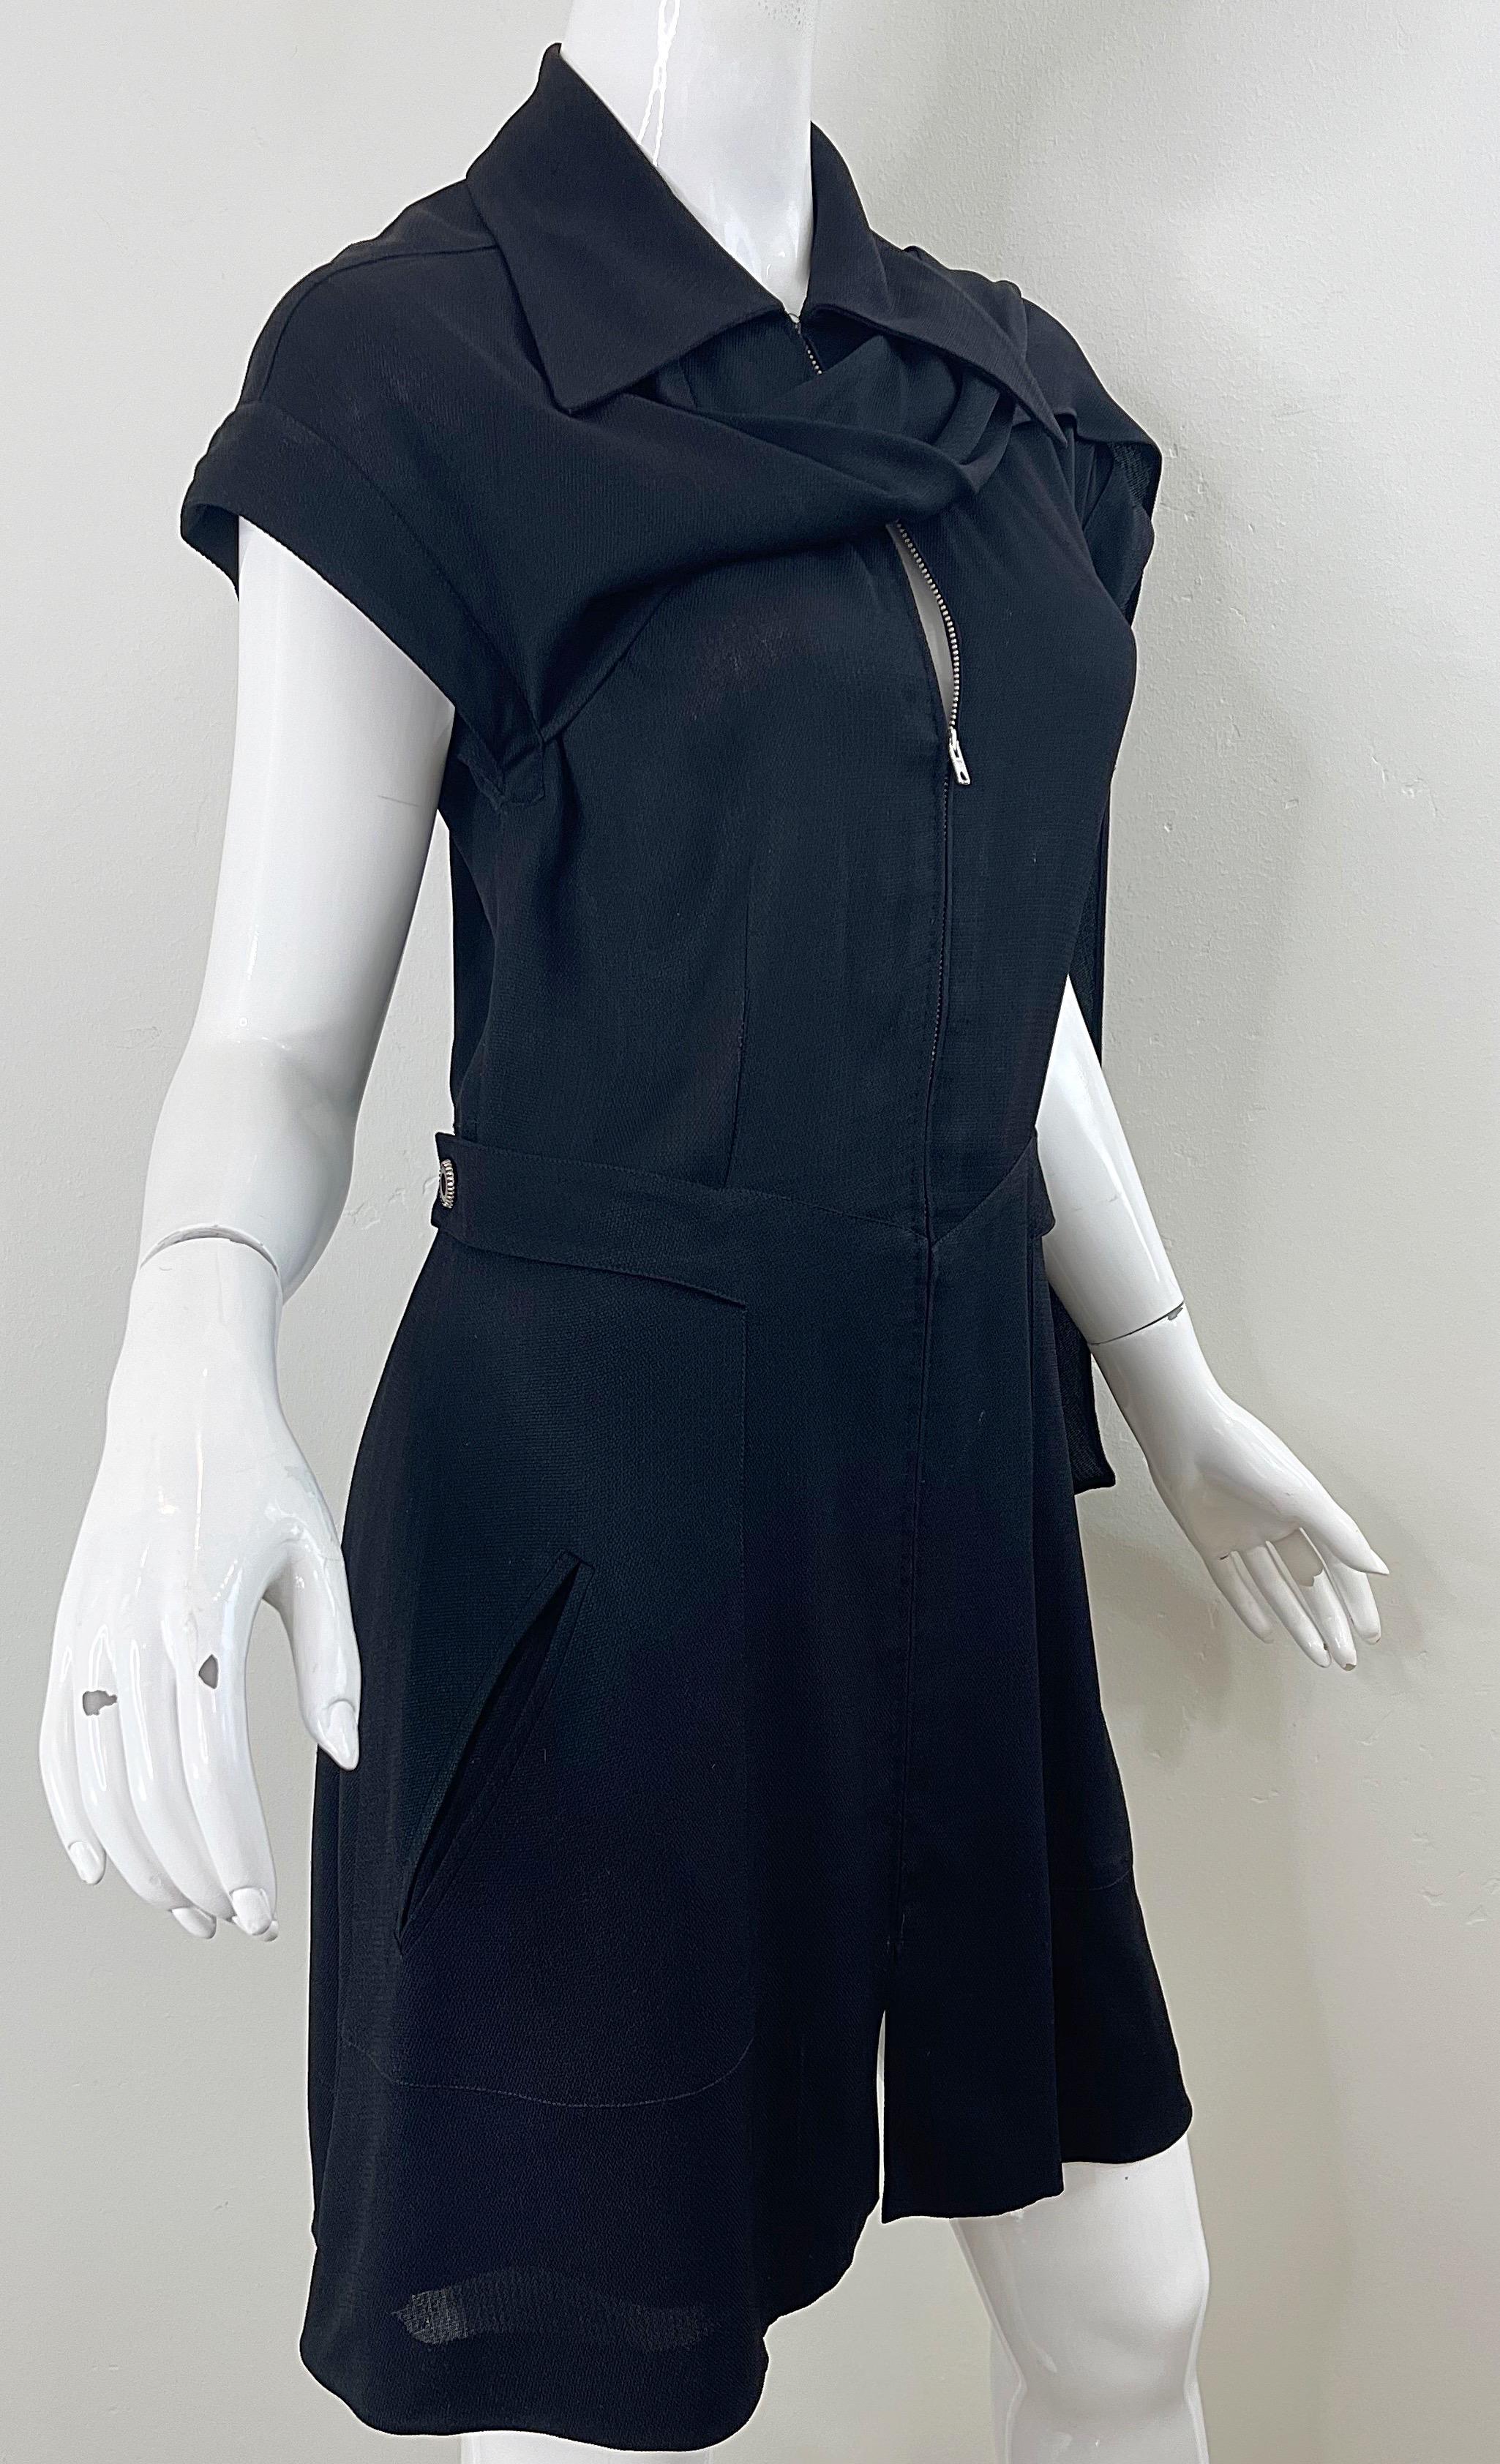 Women's Karl Lagerfeld 1990s Black Avant Garde Vintage 90s Sash Zipper Mini Dress For Sale